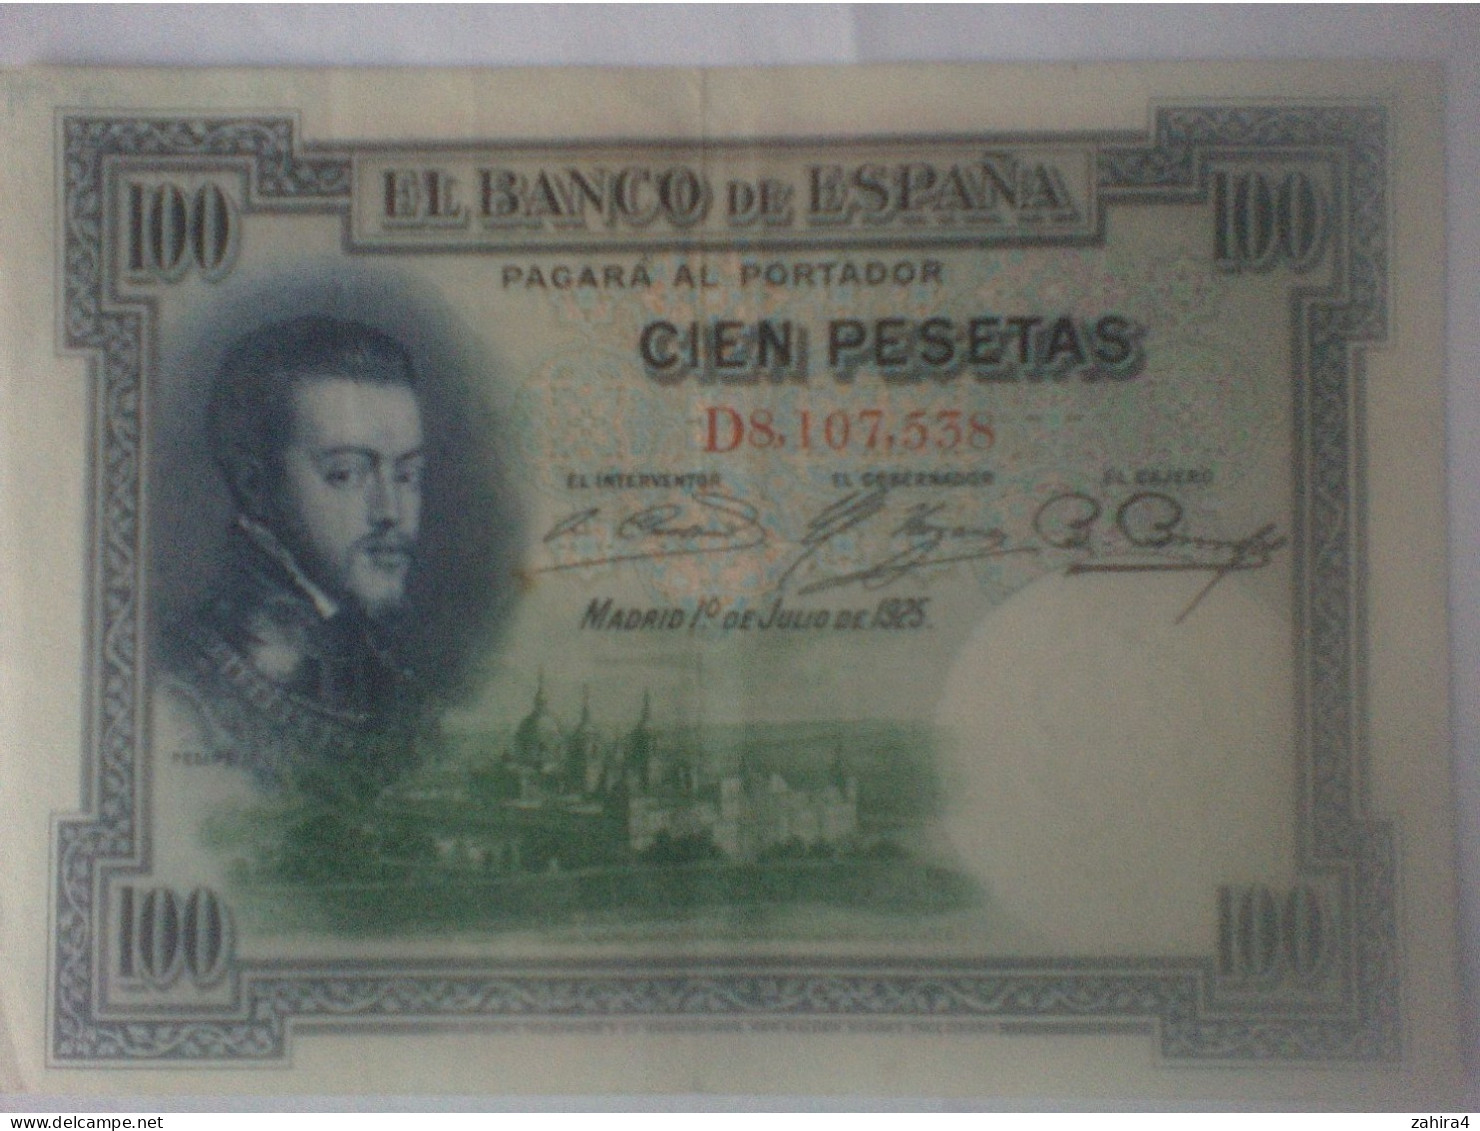 Felipe II - 100 Pesetas - Madrid 1° Julio 1925 - D8,107,538 - 100 Pesetas